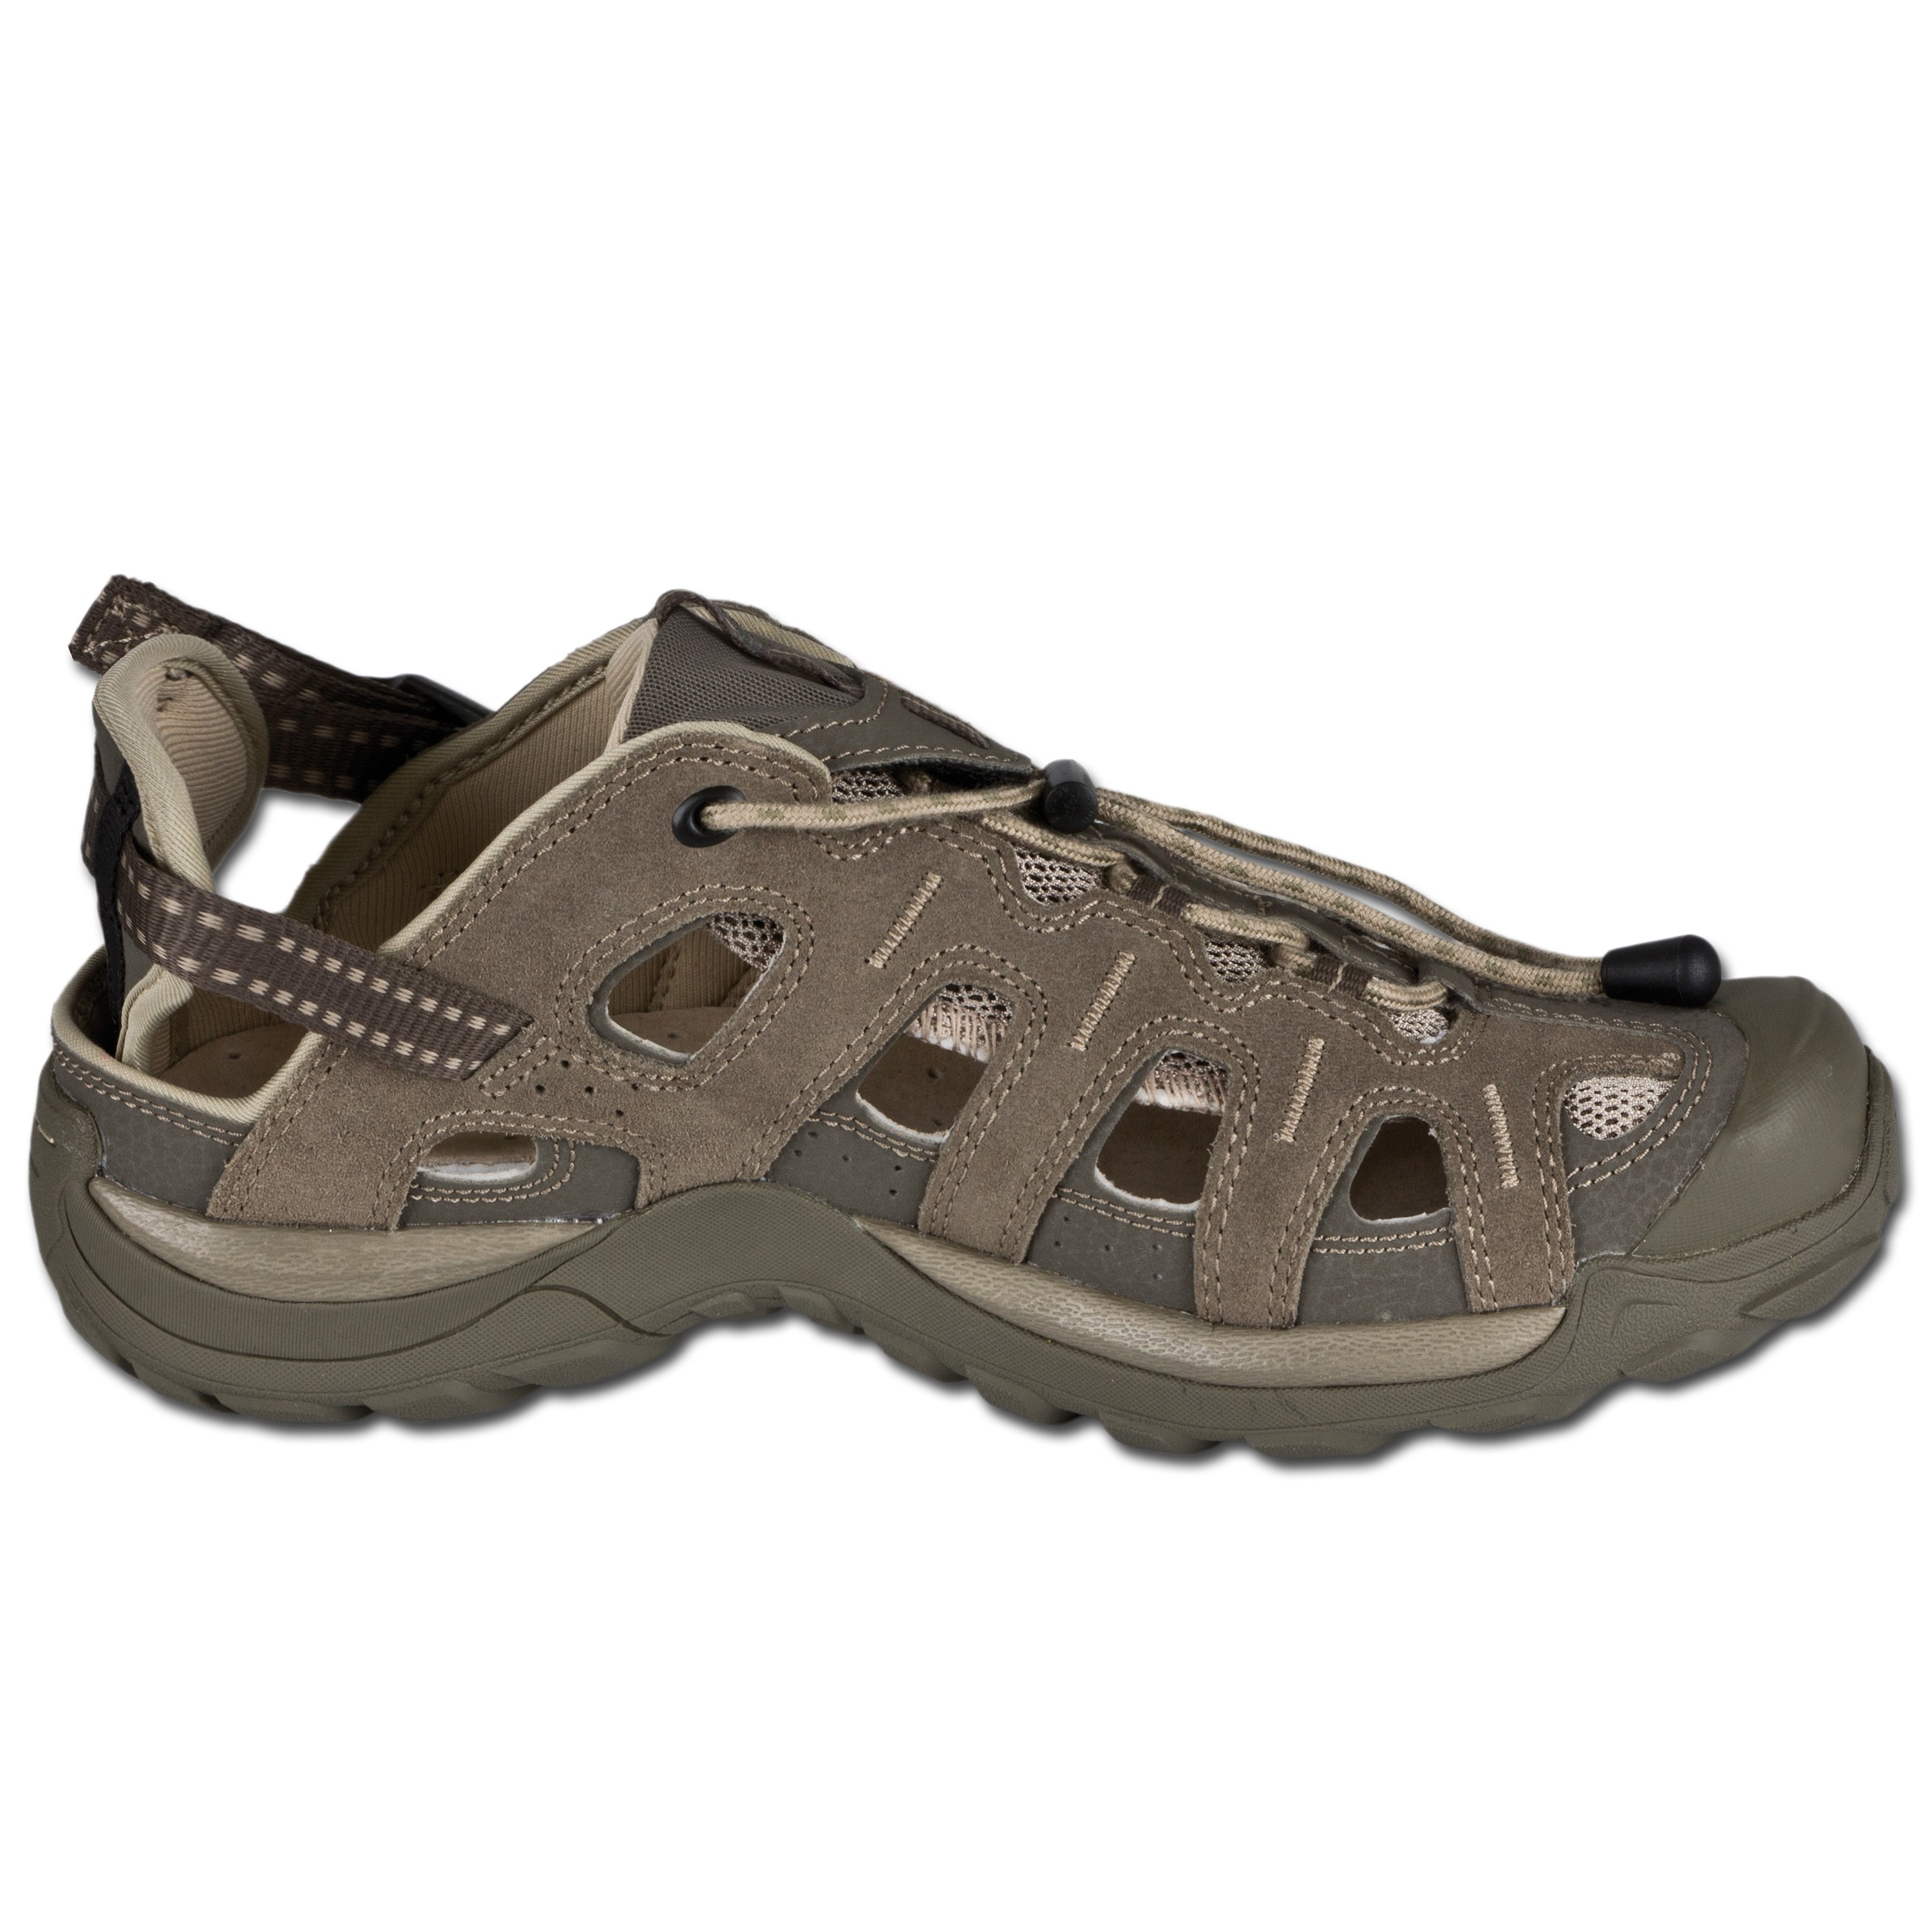 Outdoor Sandals Salomon Epic Cabrio 2 khaki | Outdoor Sandals Salomon Epic Cabrio 2 | Sandals | Footwear | Clothing